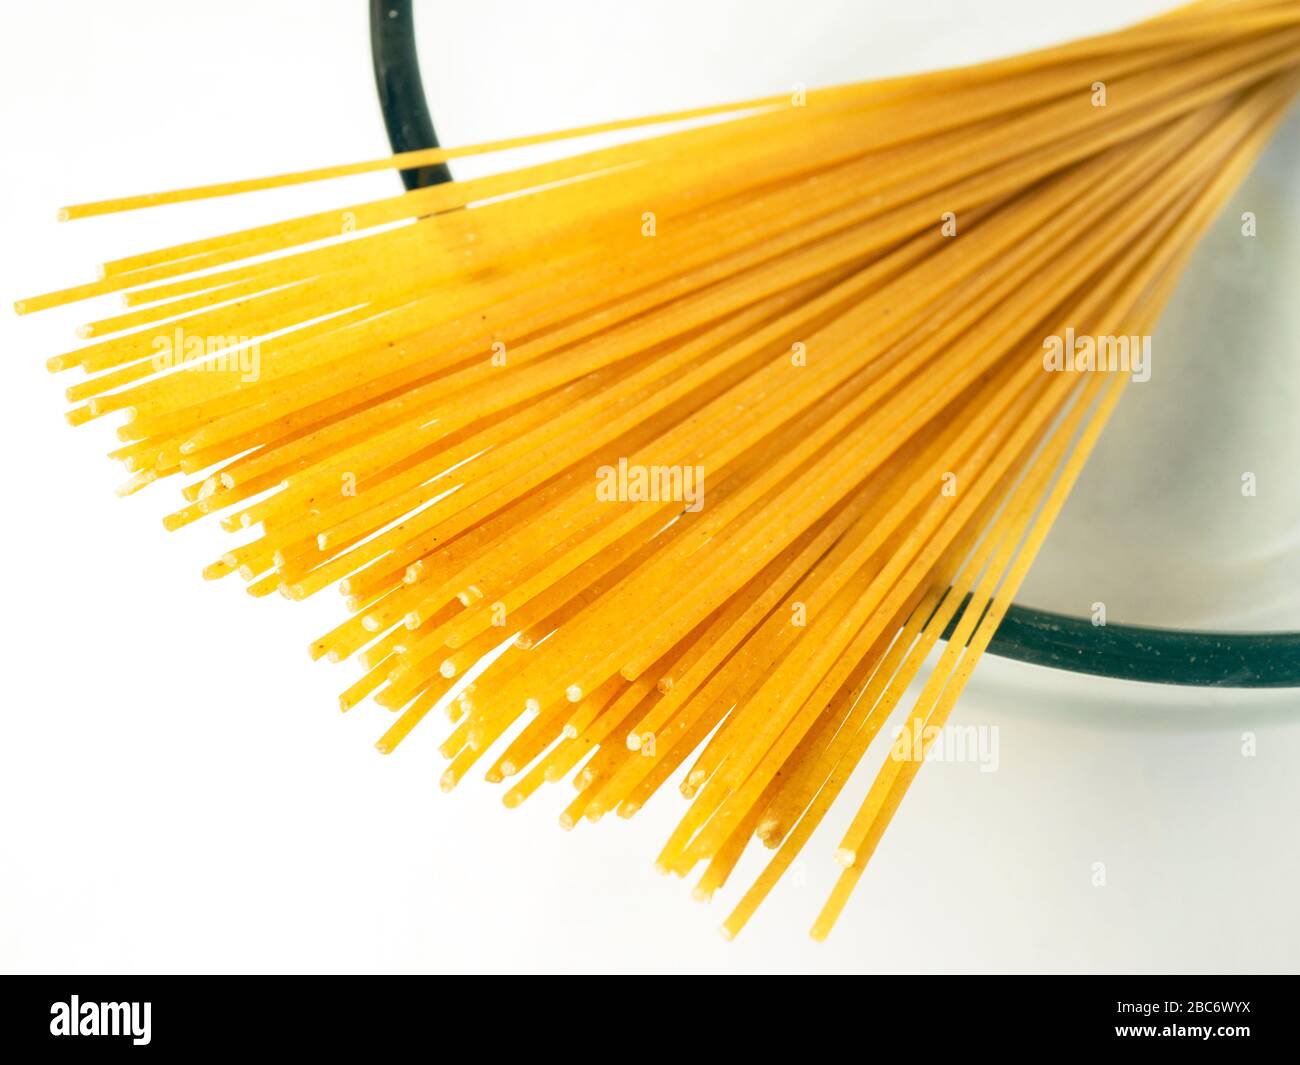 100 gramos de espaguetis de trigo integral en un recipiente de cristal sobre un mantel blanco Foto de stock